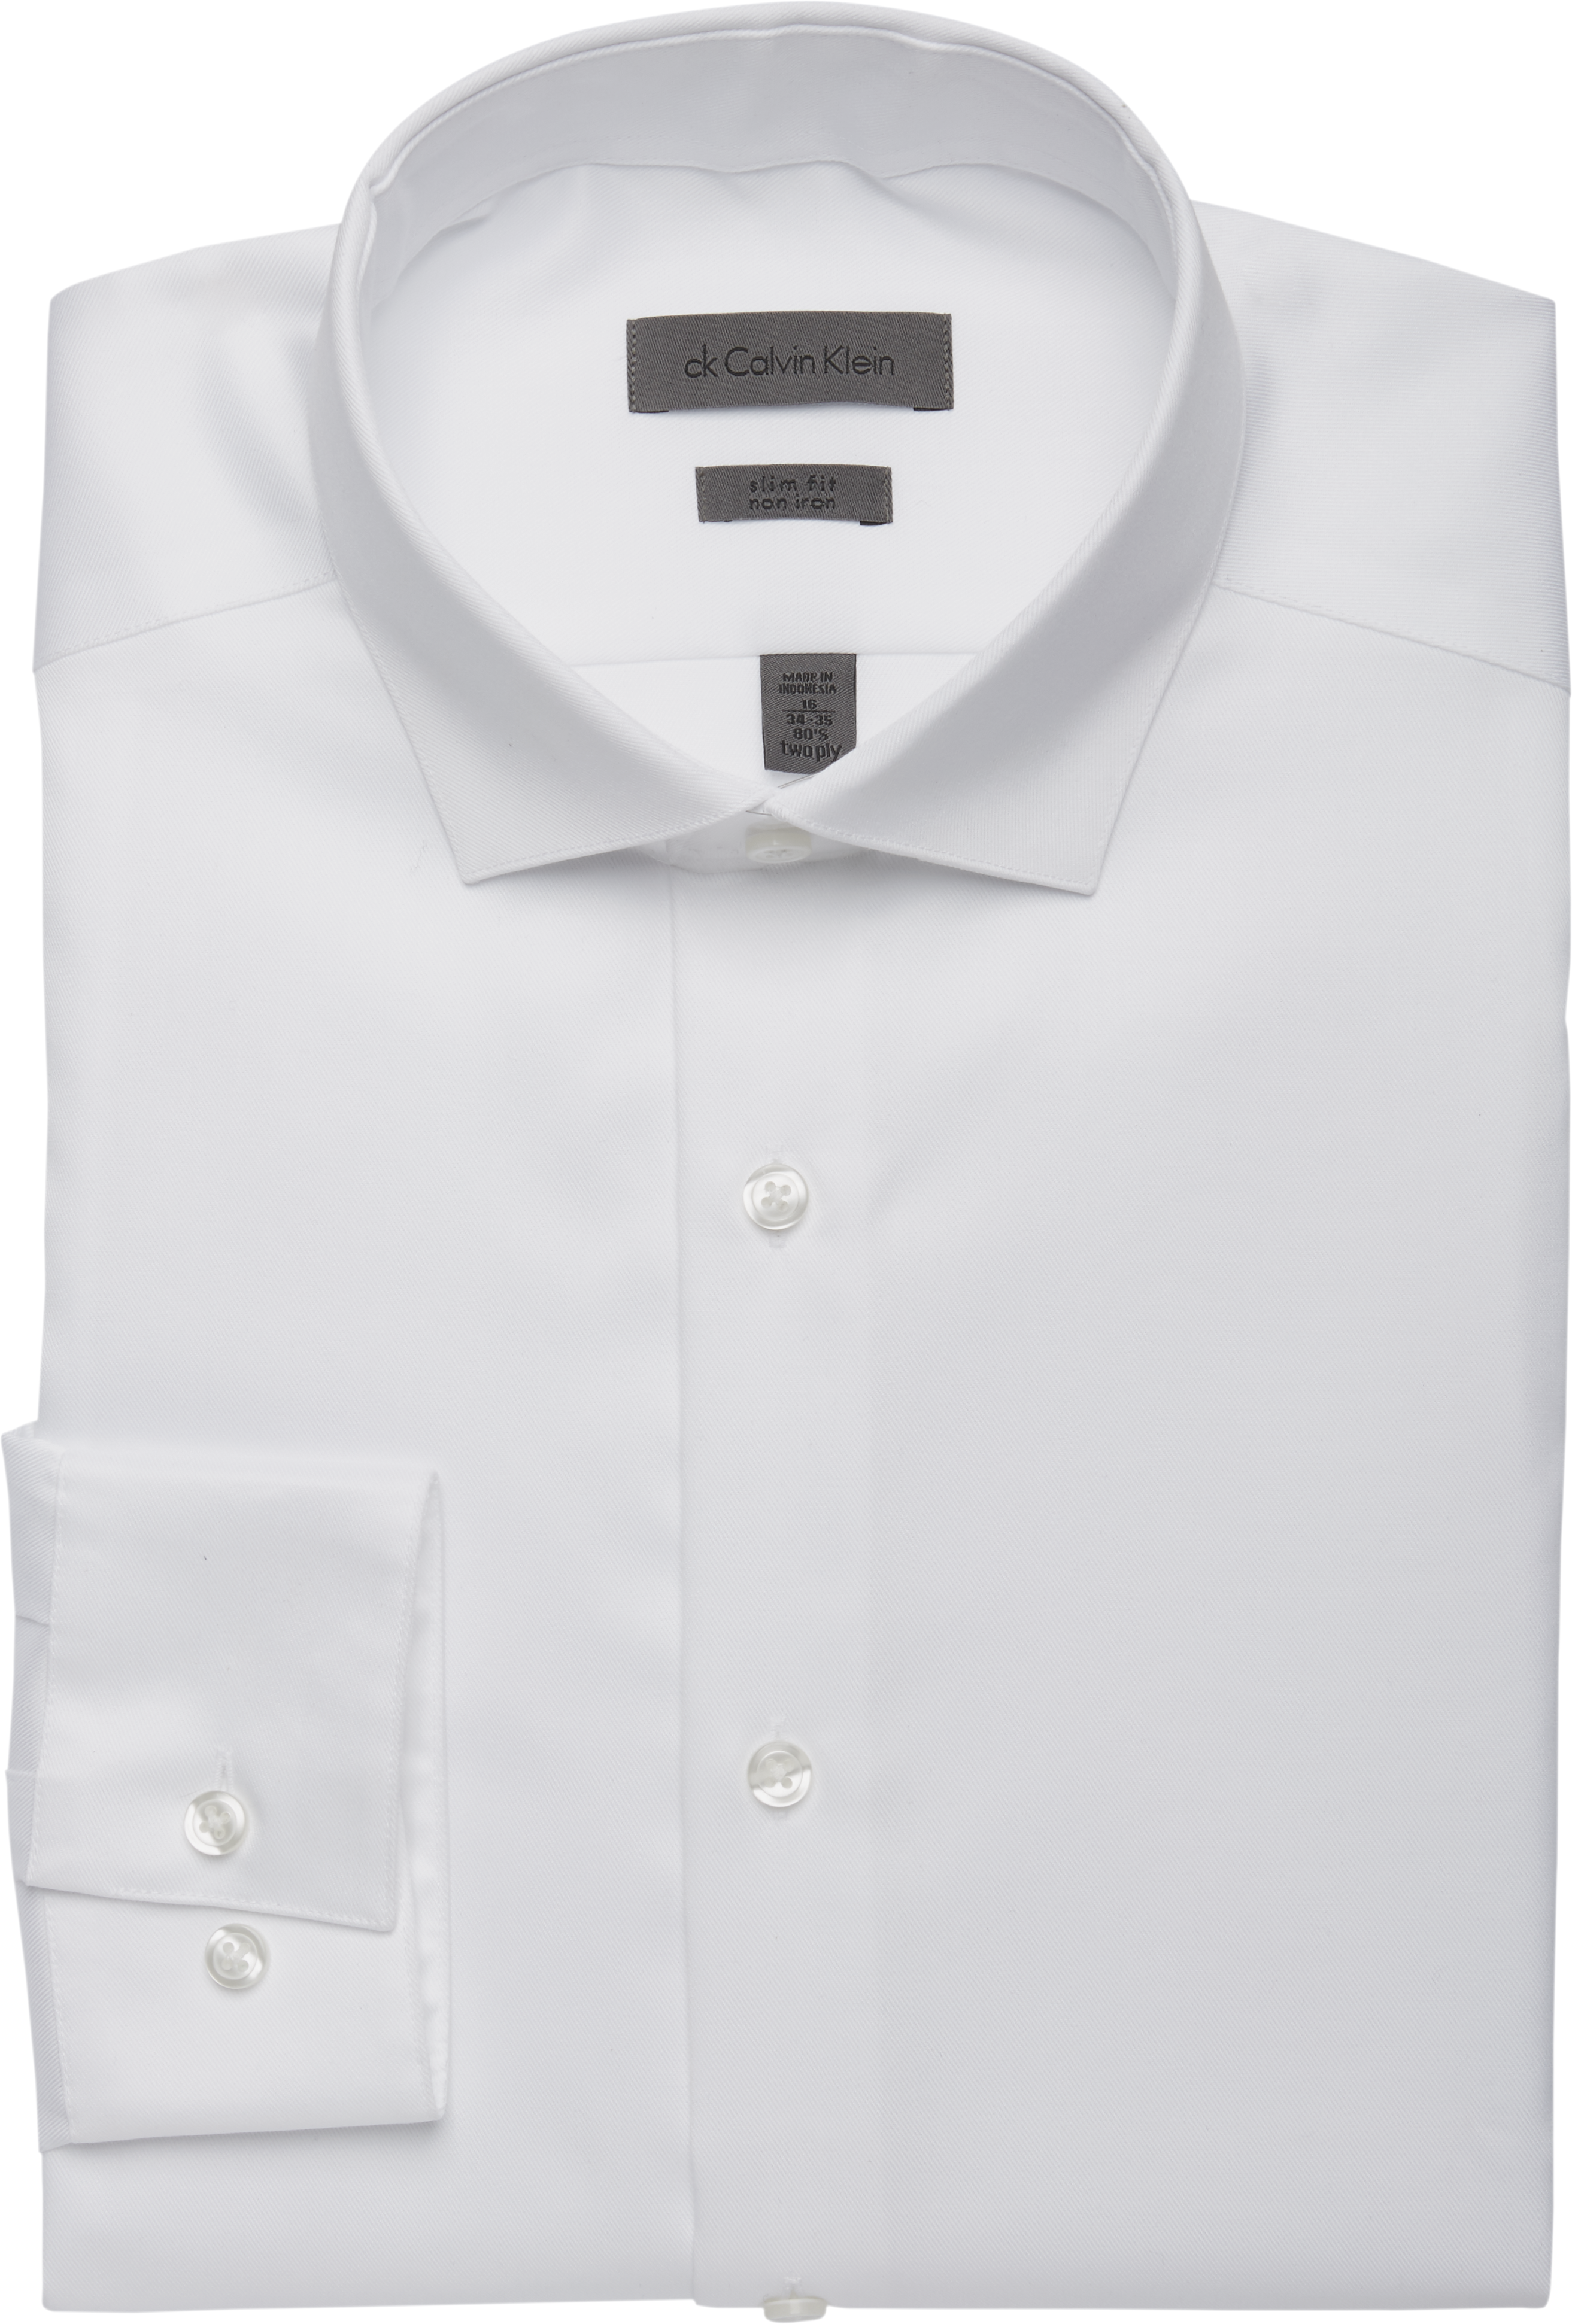 crisp white dress shirt